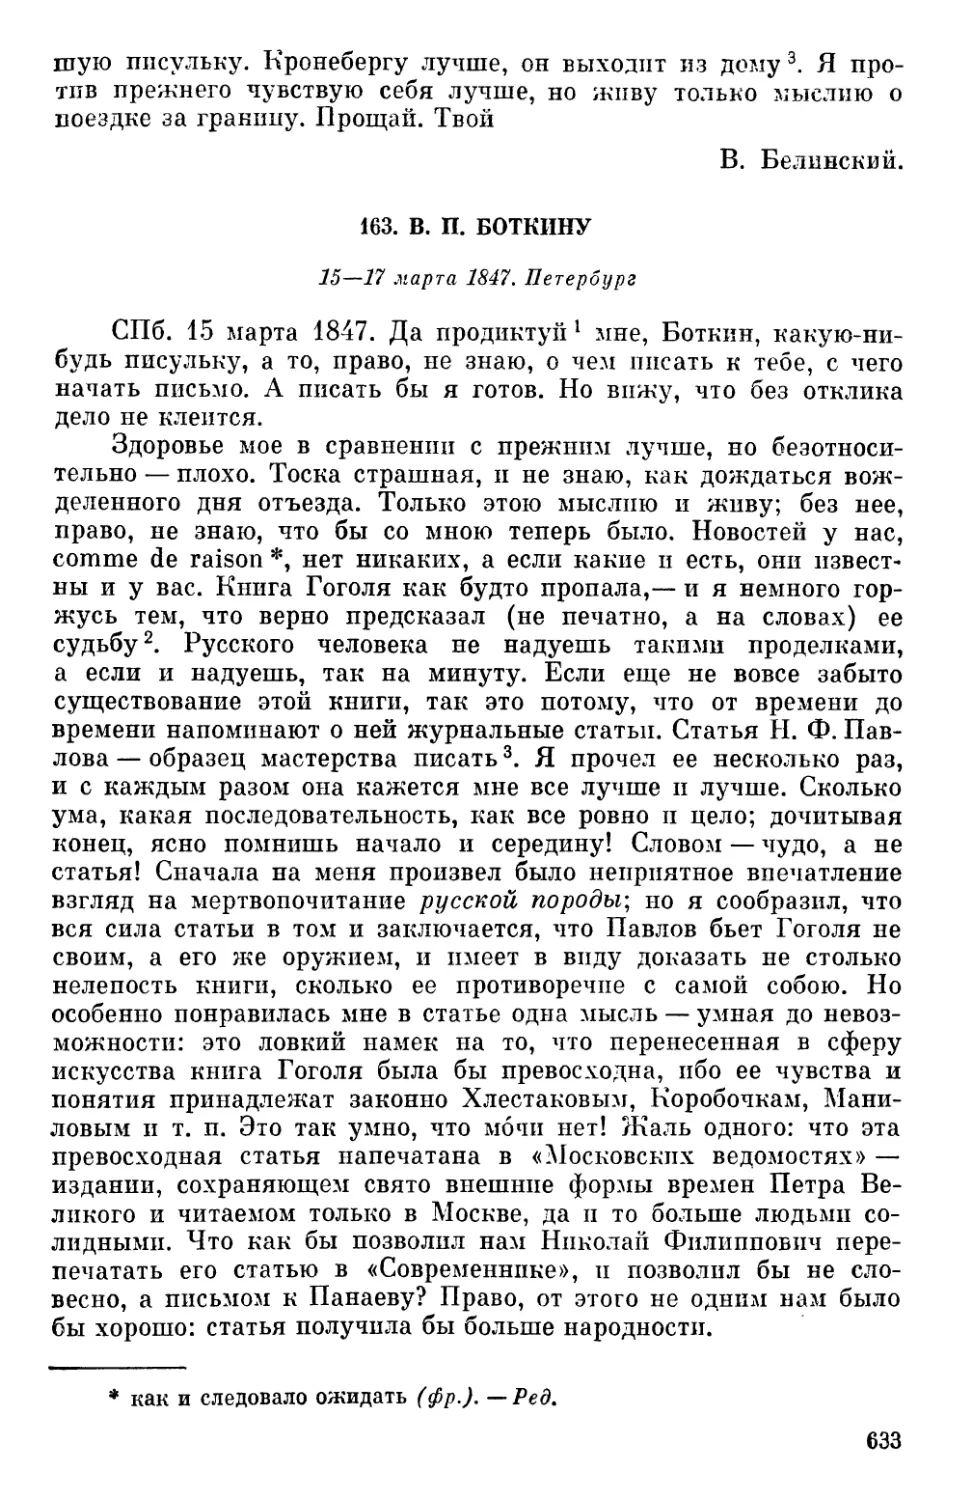 163. В. П. Боткину. 15—17 марта 1847